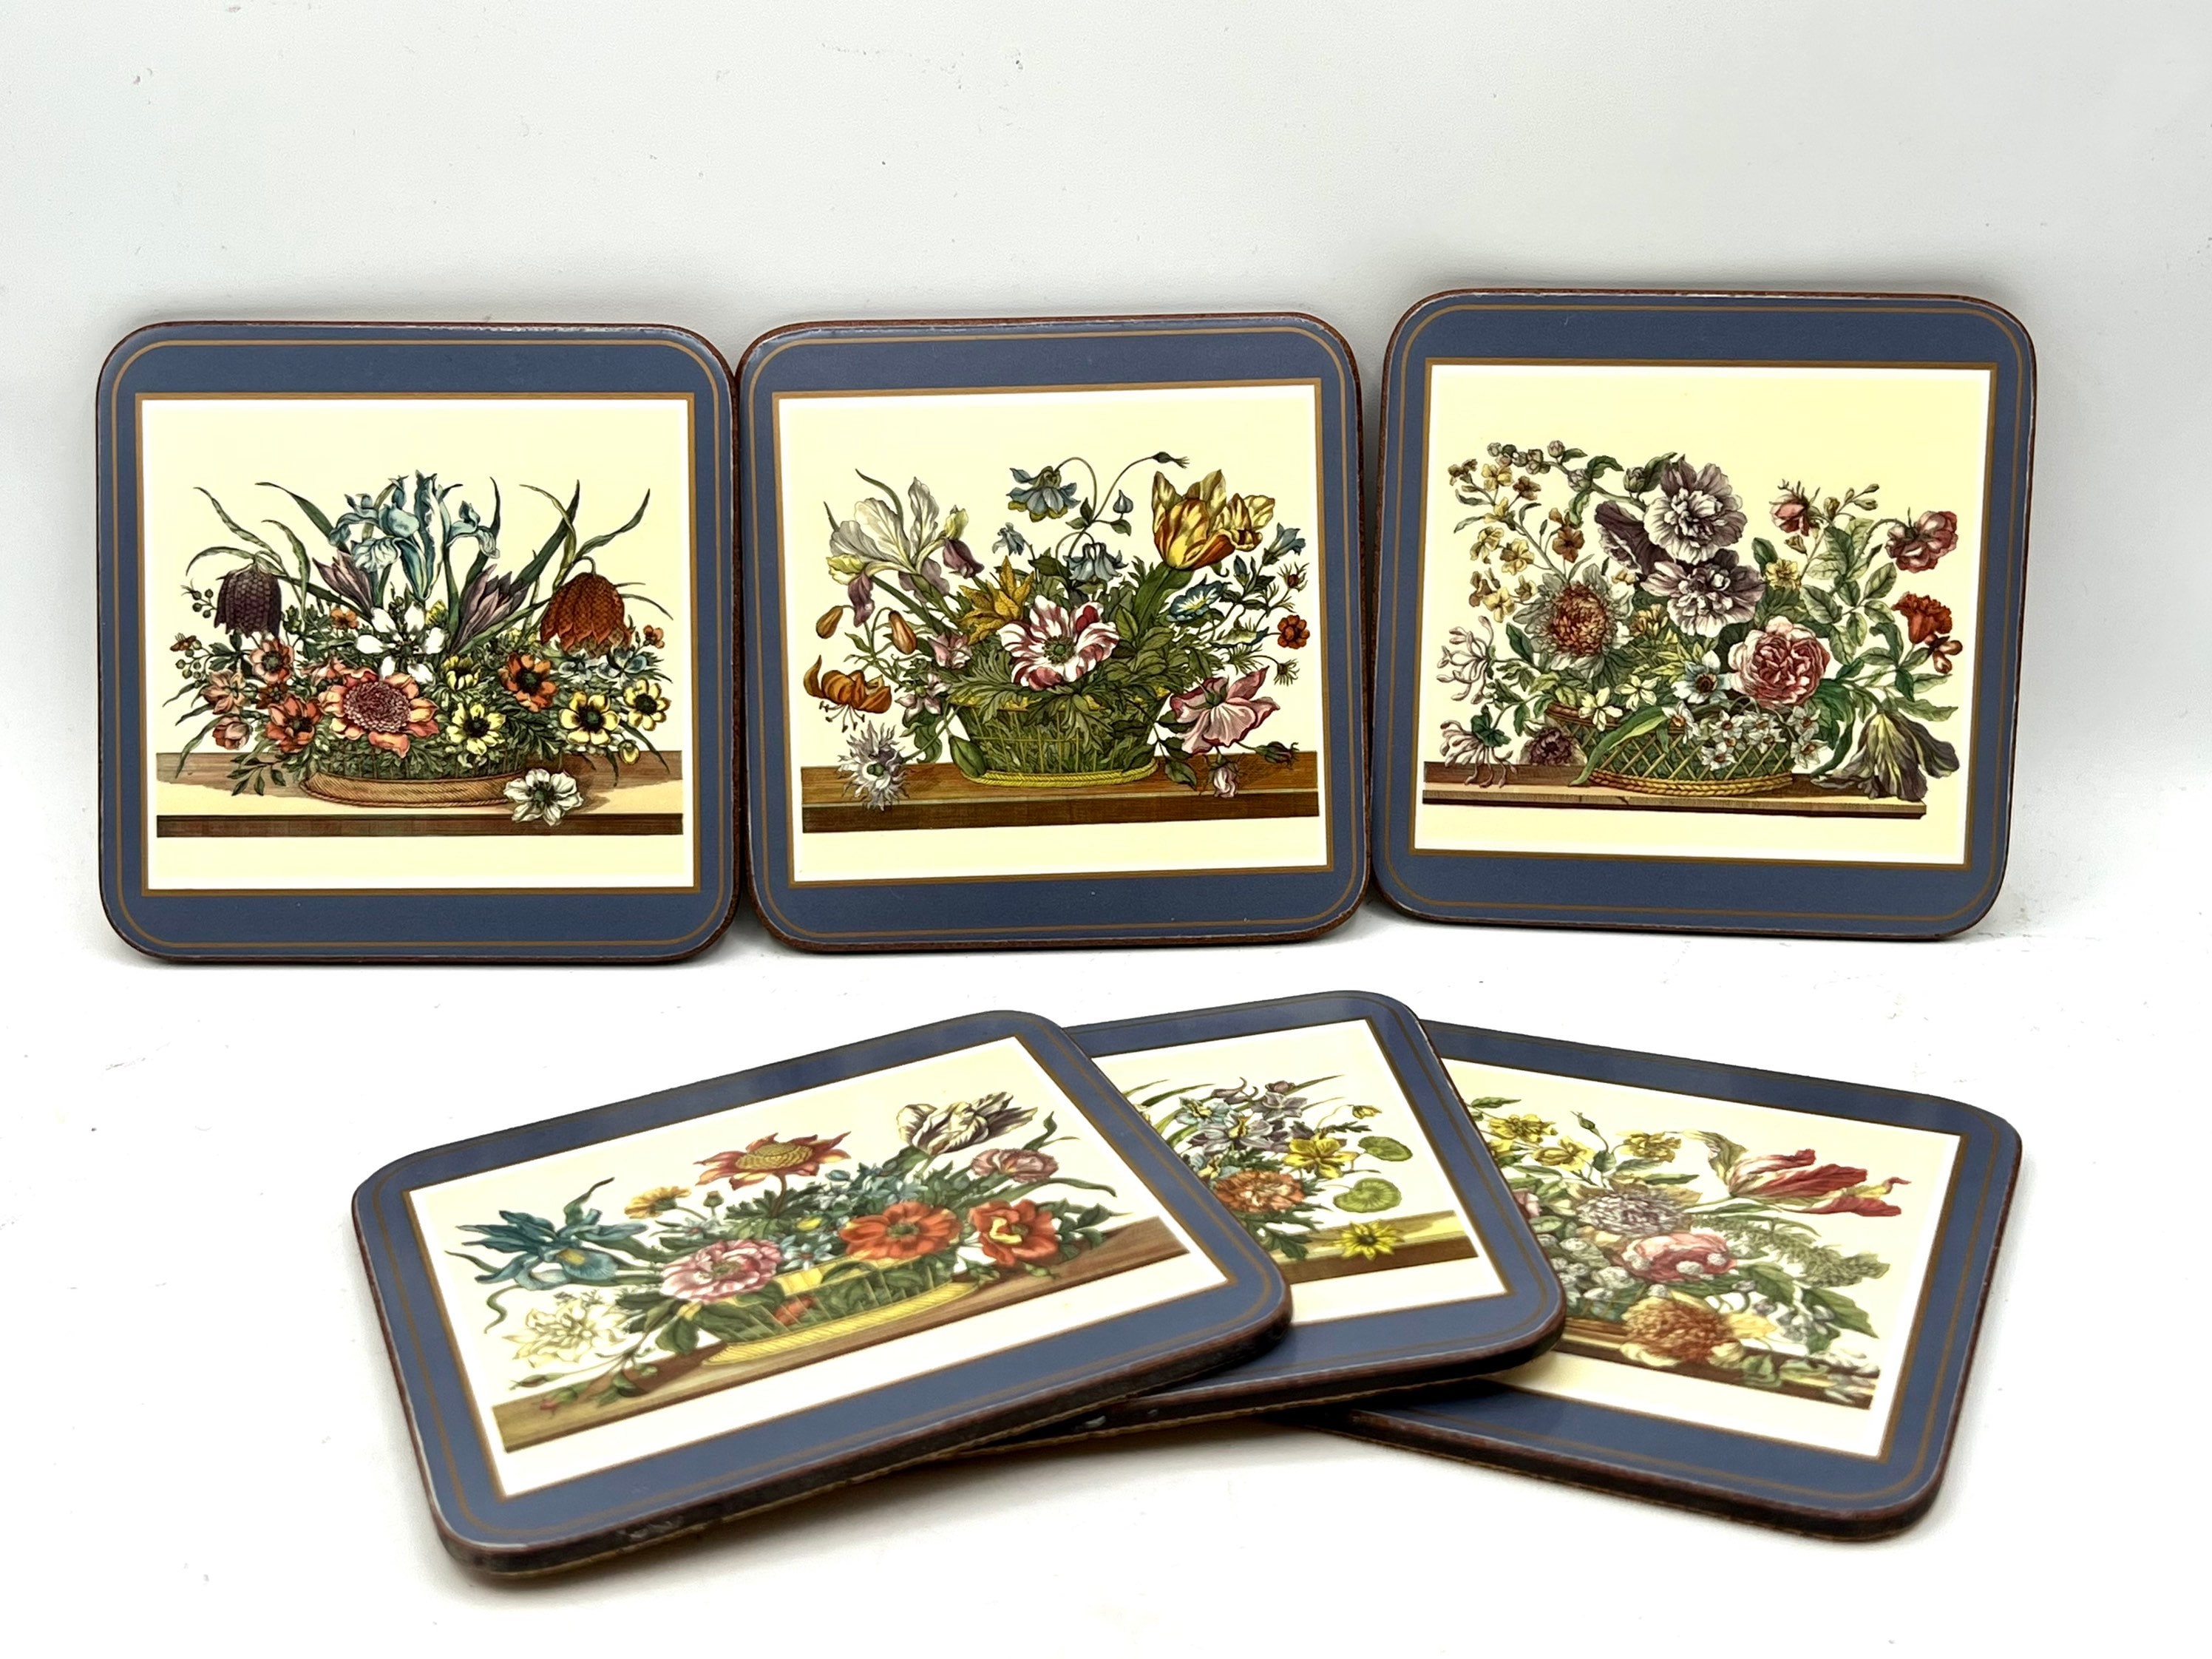 Pimpernel Classic Coasters Set of 6 - Cream